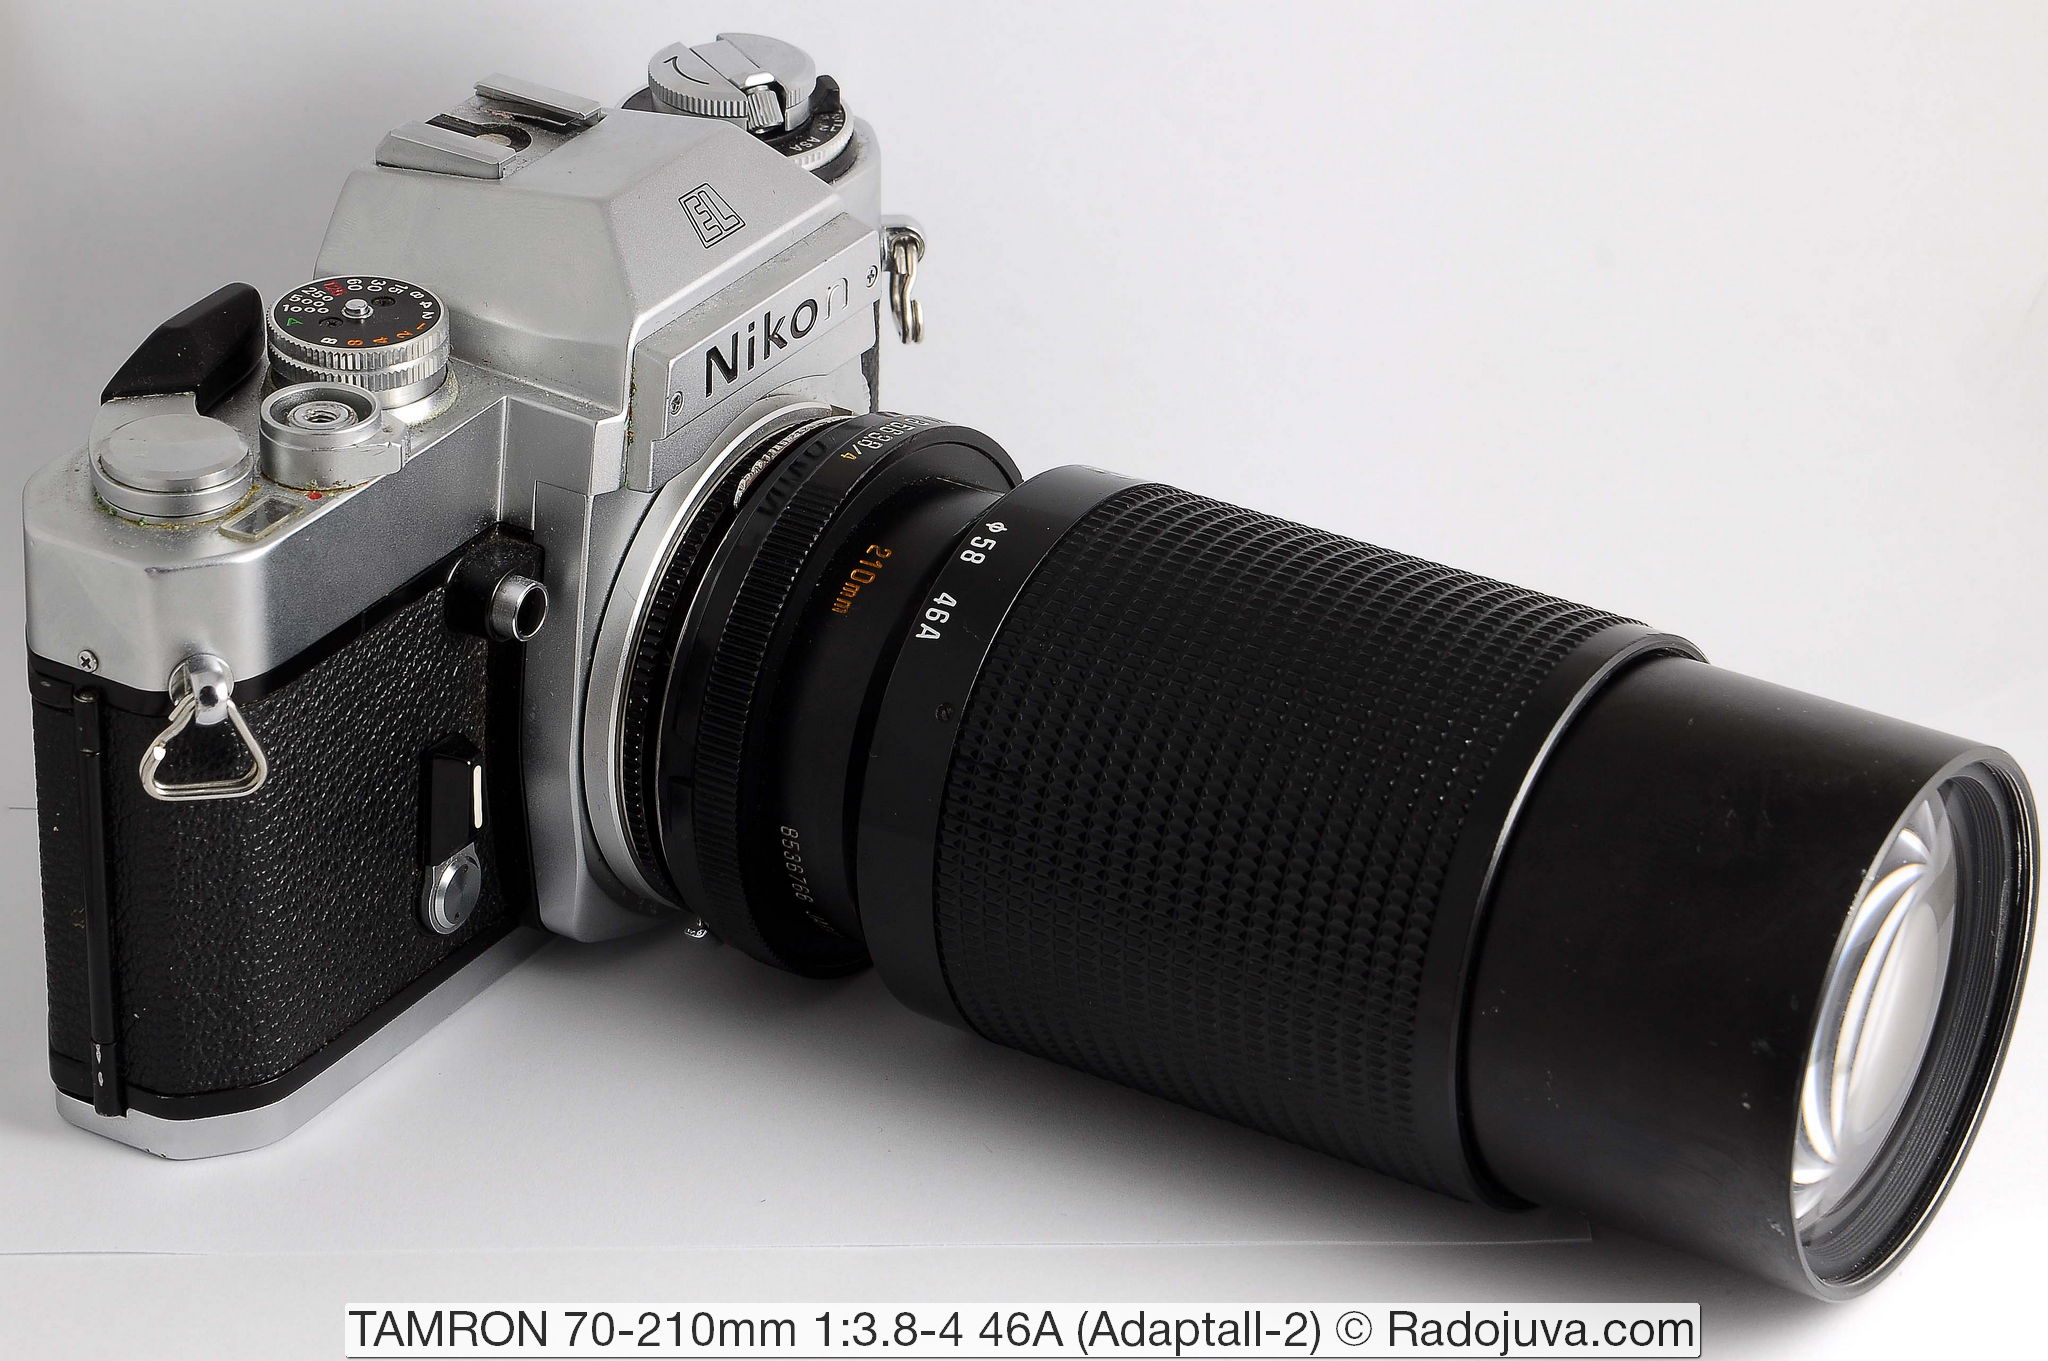 TAMRON 70-210mm 1: 3.8-4 46A (Adaptall-2)